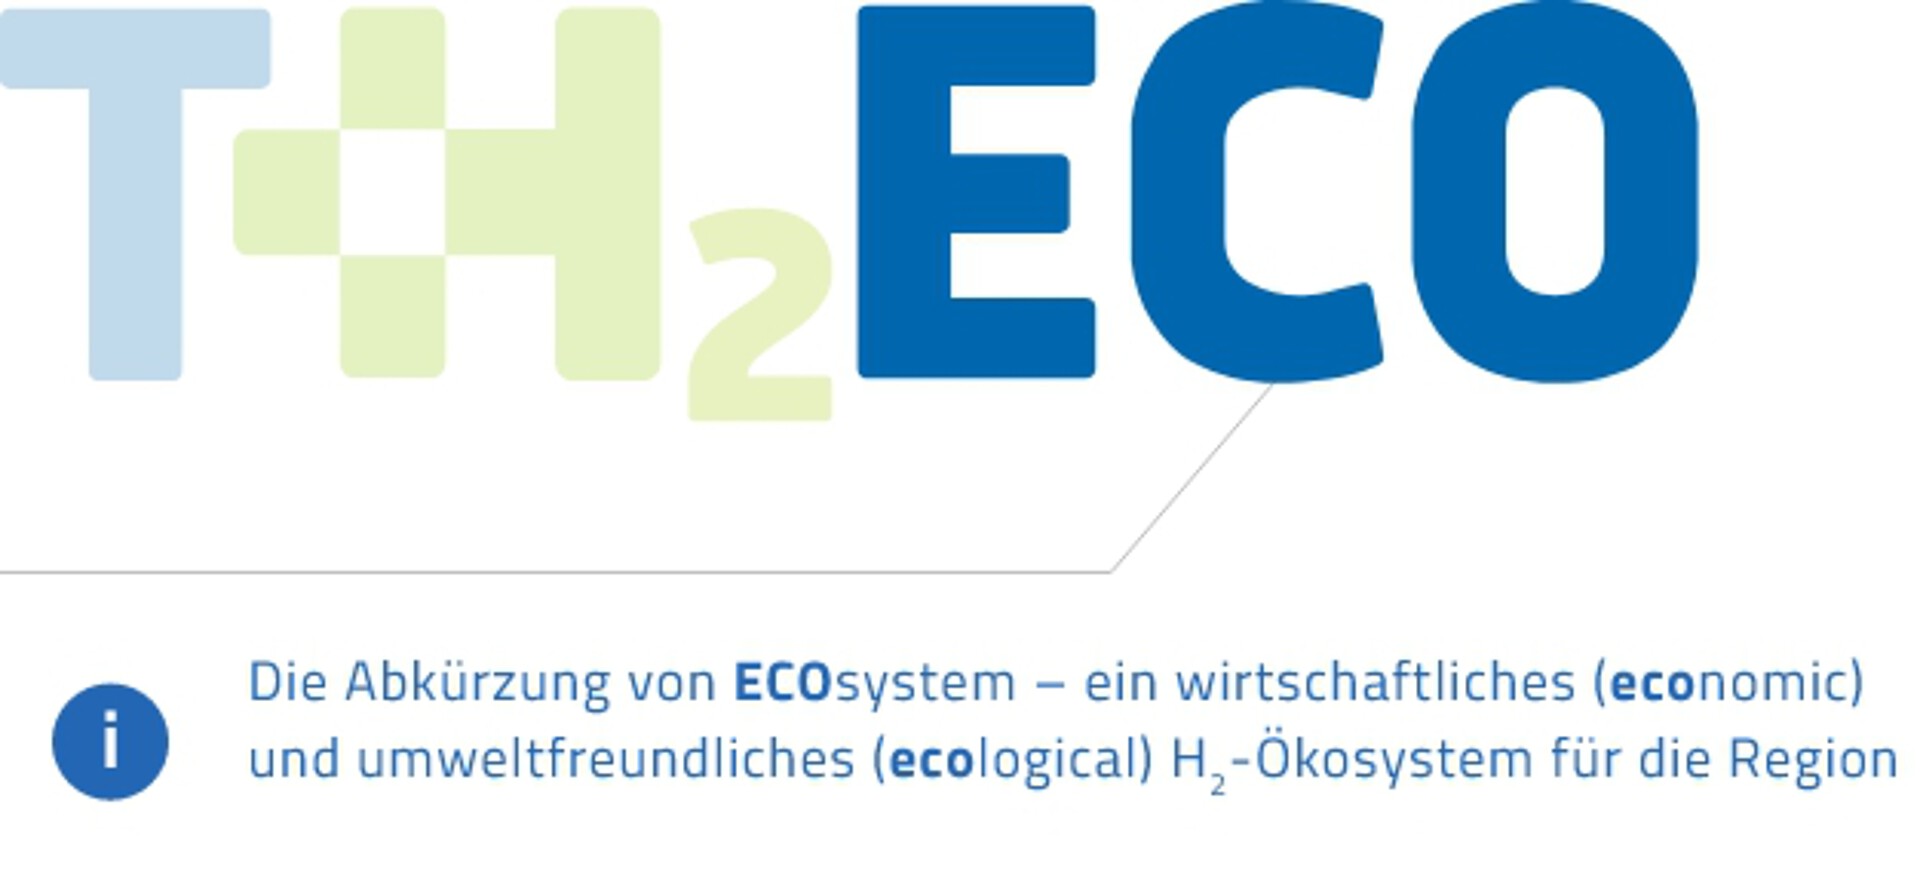 Eco – TH2ECO